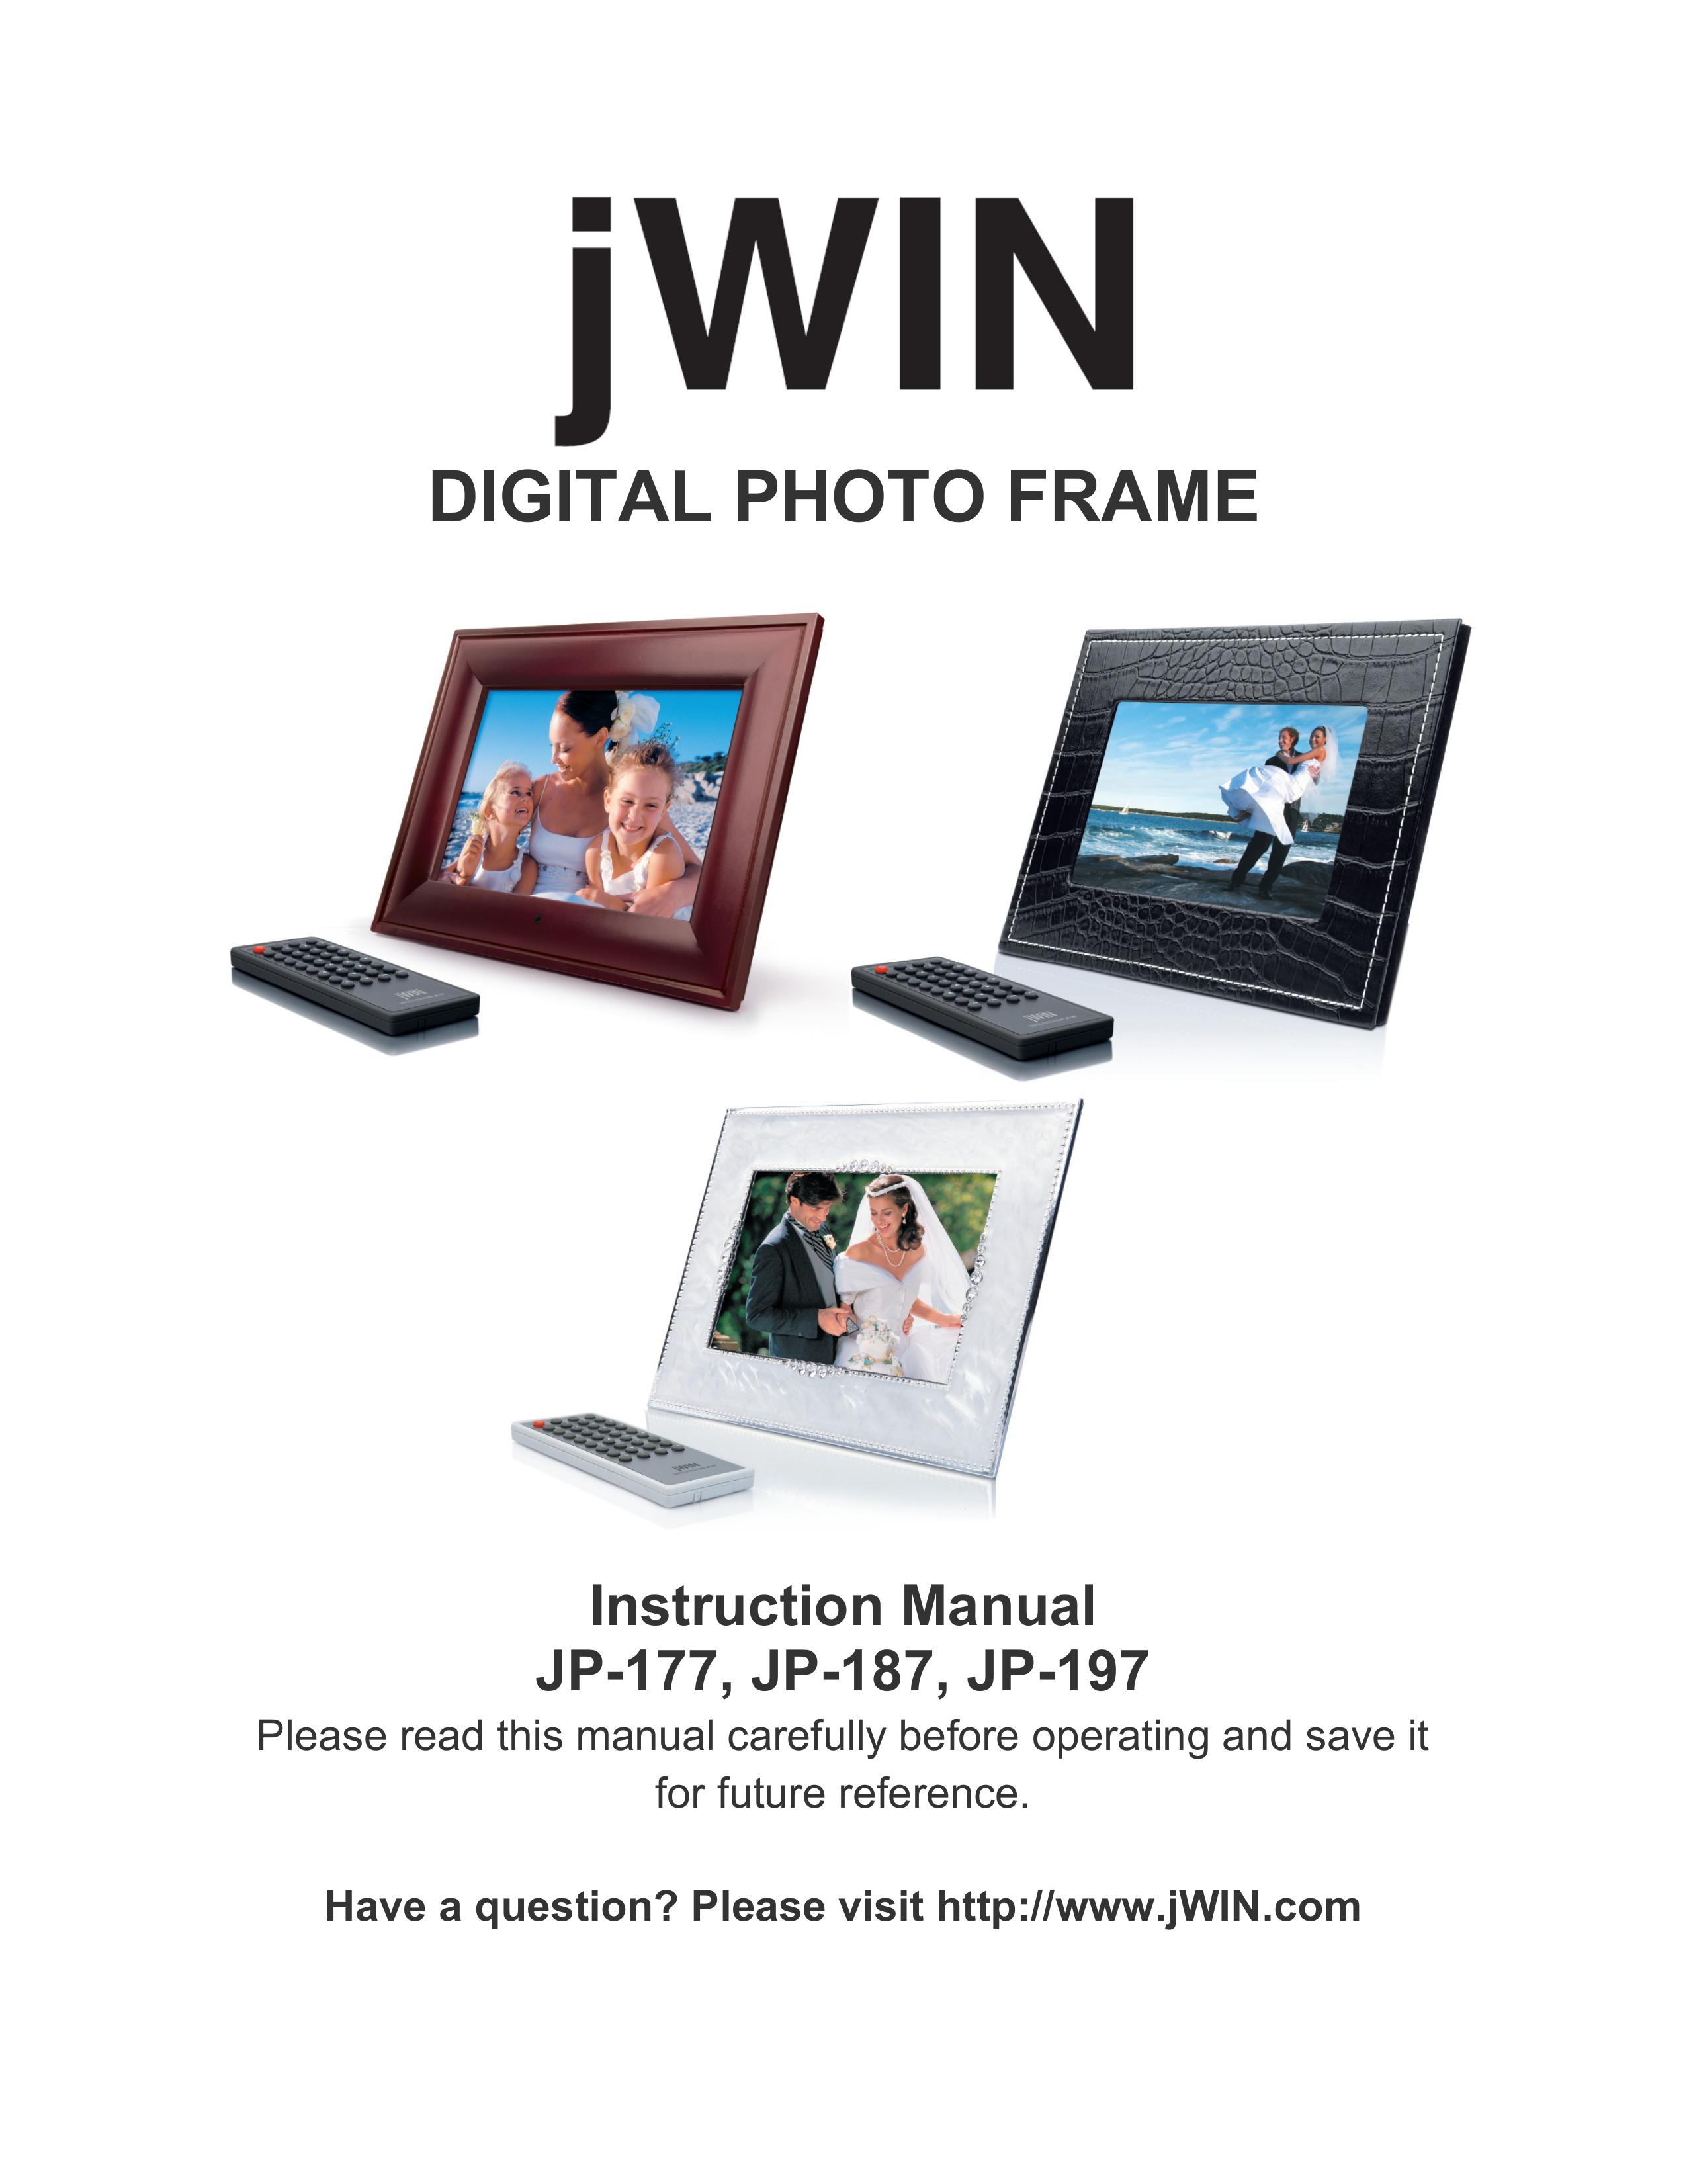 Jwin JP-197 Digital Photo Frame User Manual